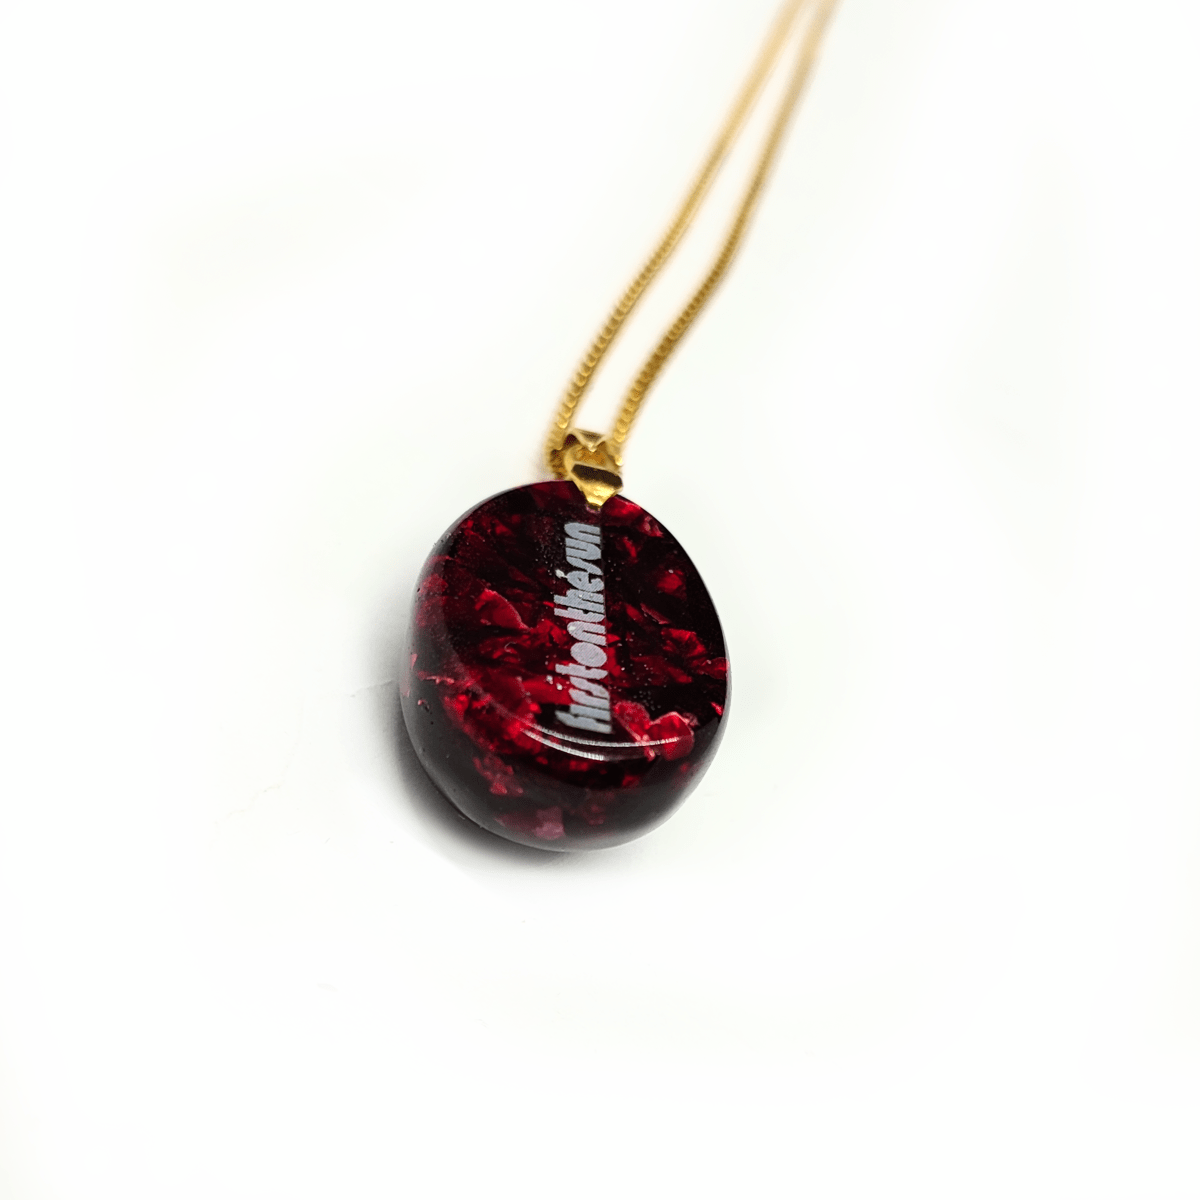 Rückseite eines roten Orgonit Amuletts mit Rubin. Der Orgonit Anhänger ist an einer goldenen Kette befestigt.